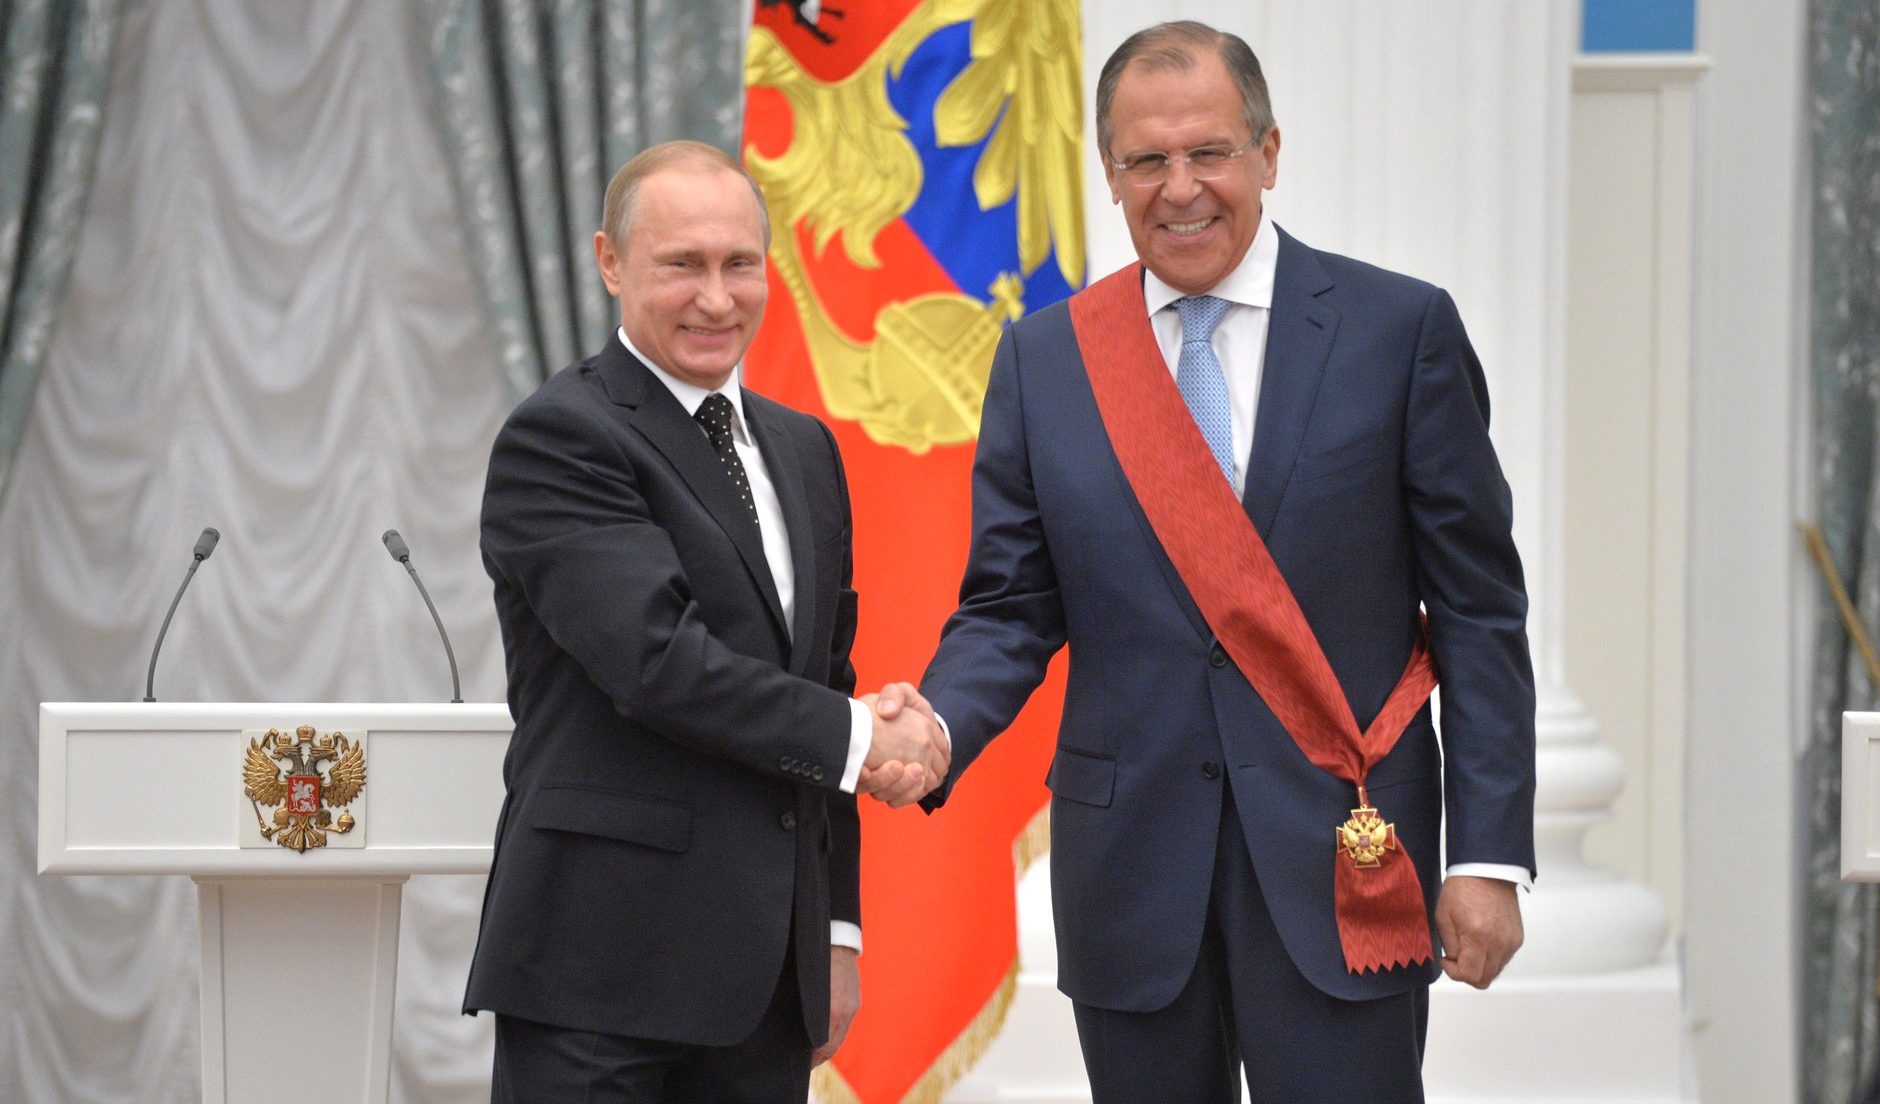 La Cia: da Putin 300 milioni di dollari a partiti stranieri (anche in Europa) per una politica filo-russa